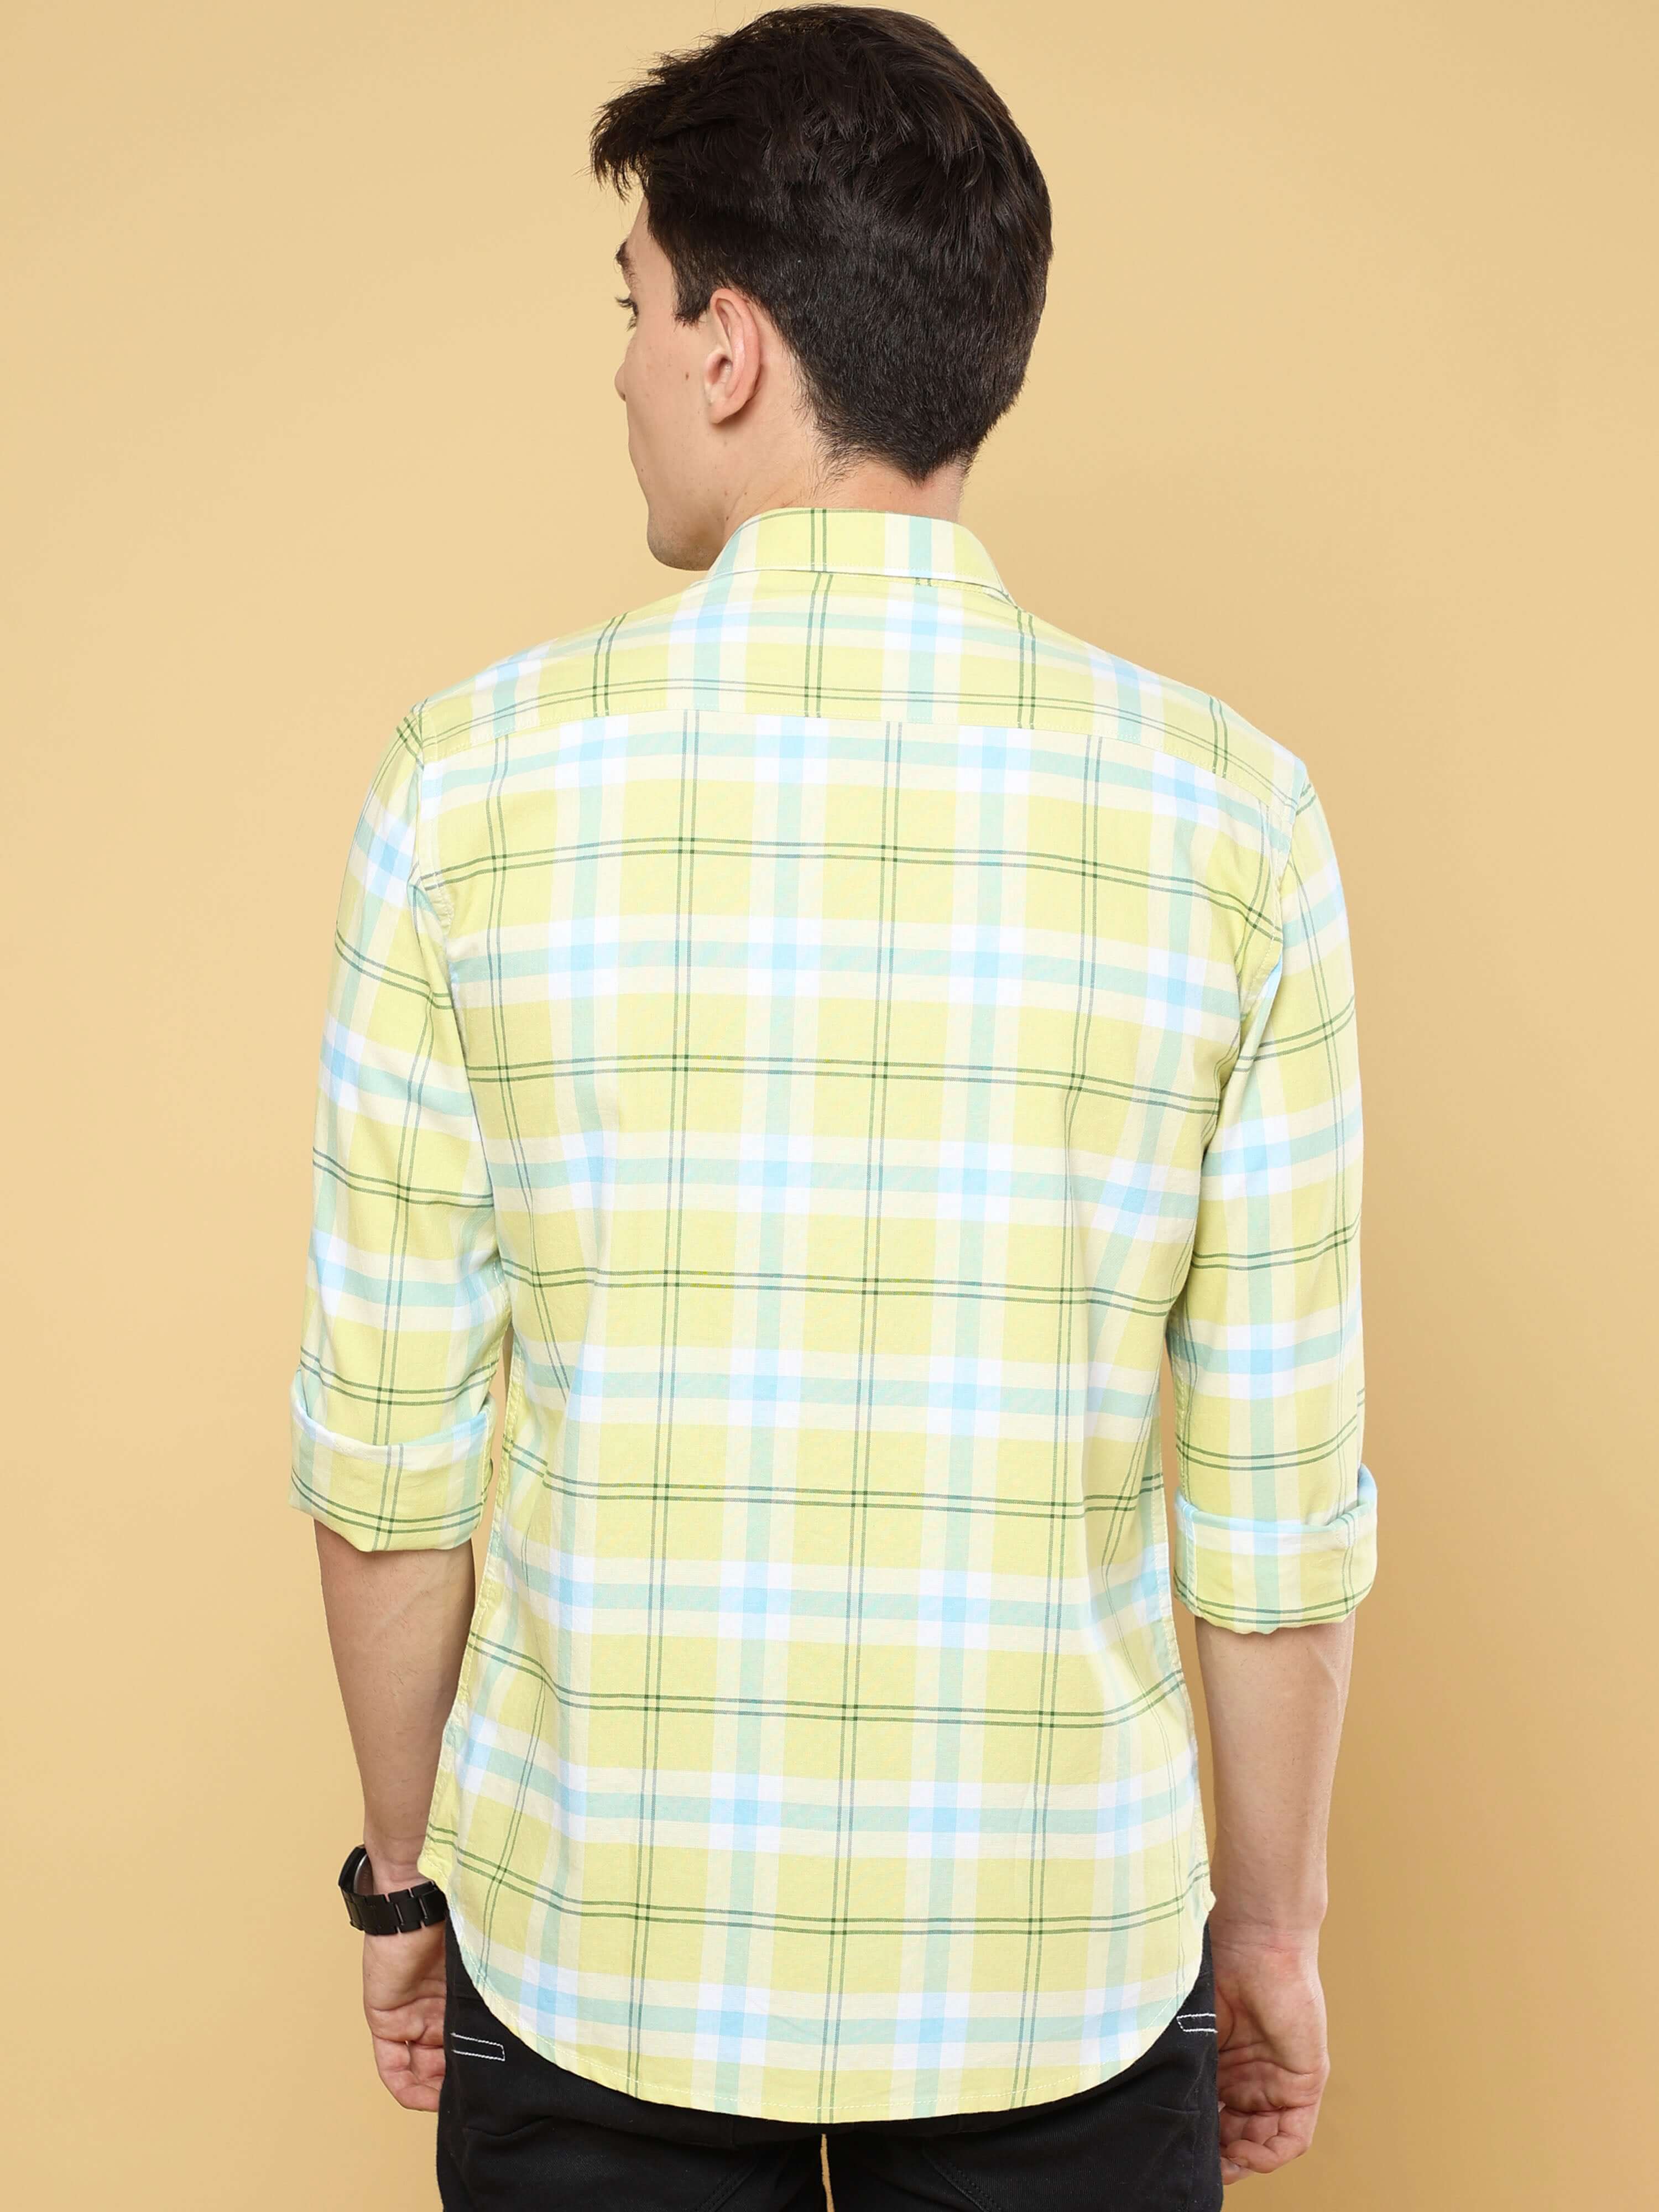 Crayola Yellow Cross Check Shirt